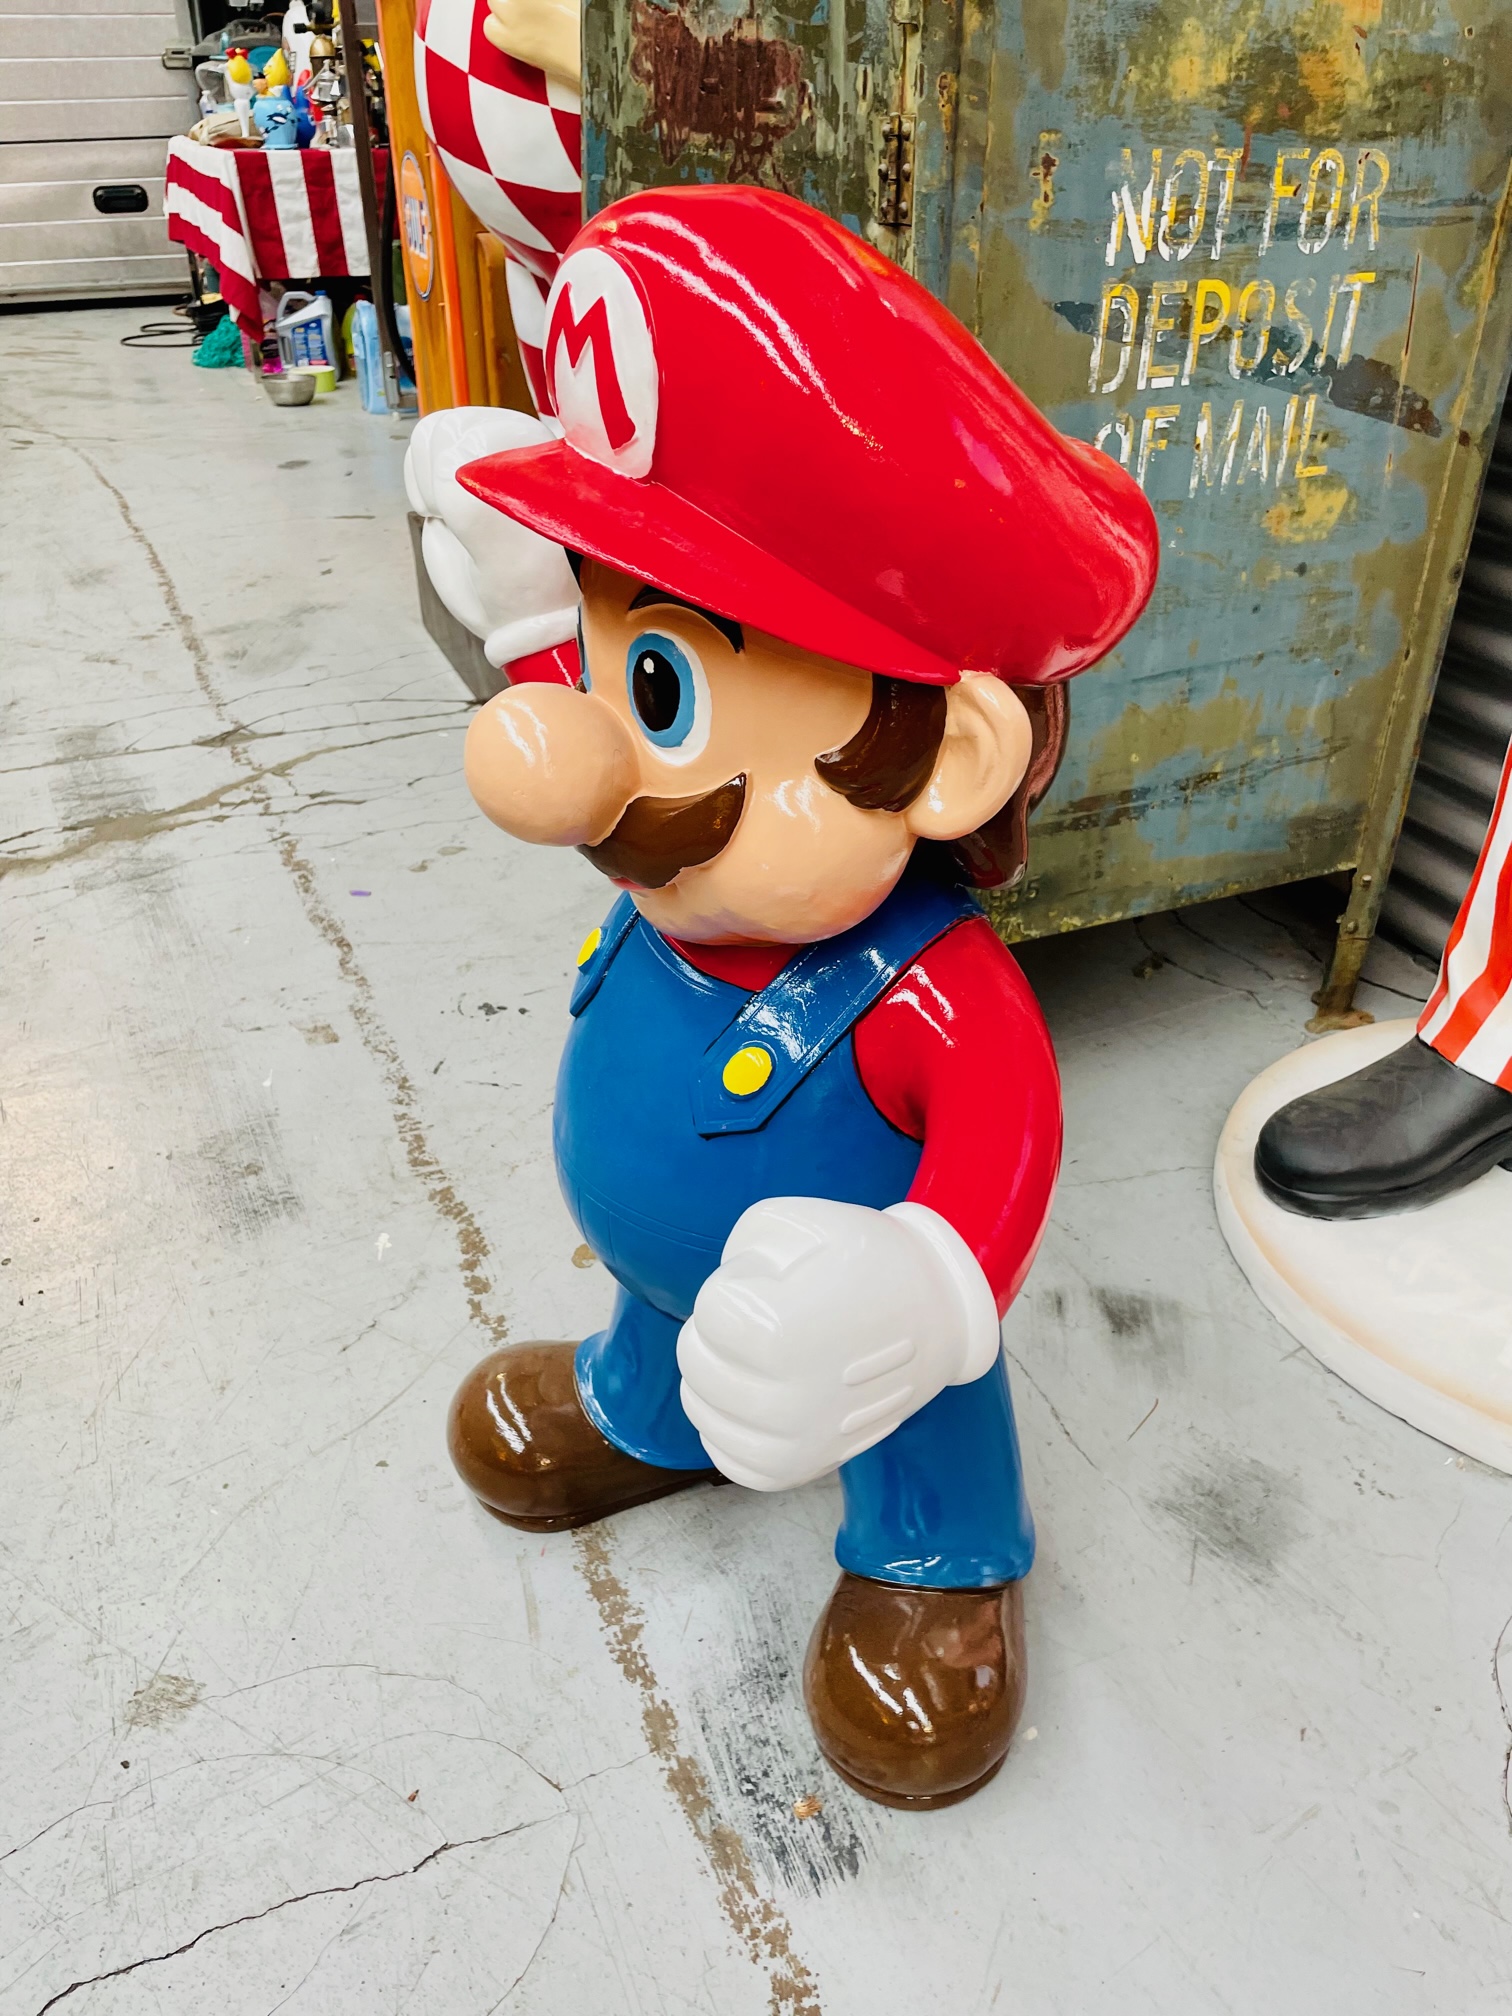 Figurine Super Mario Bros Assis sur son muret - Mario